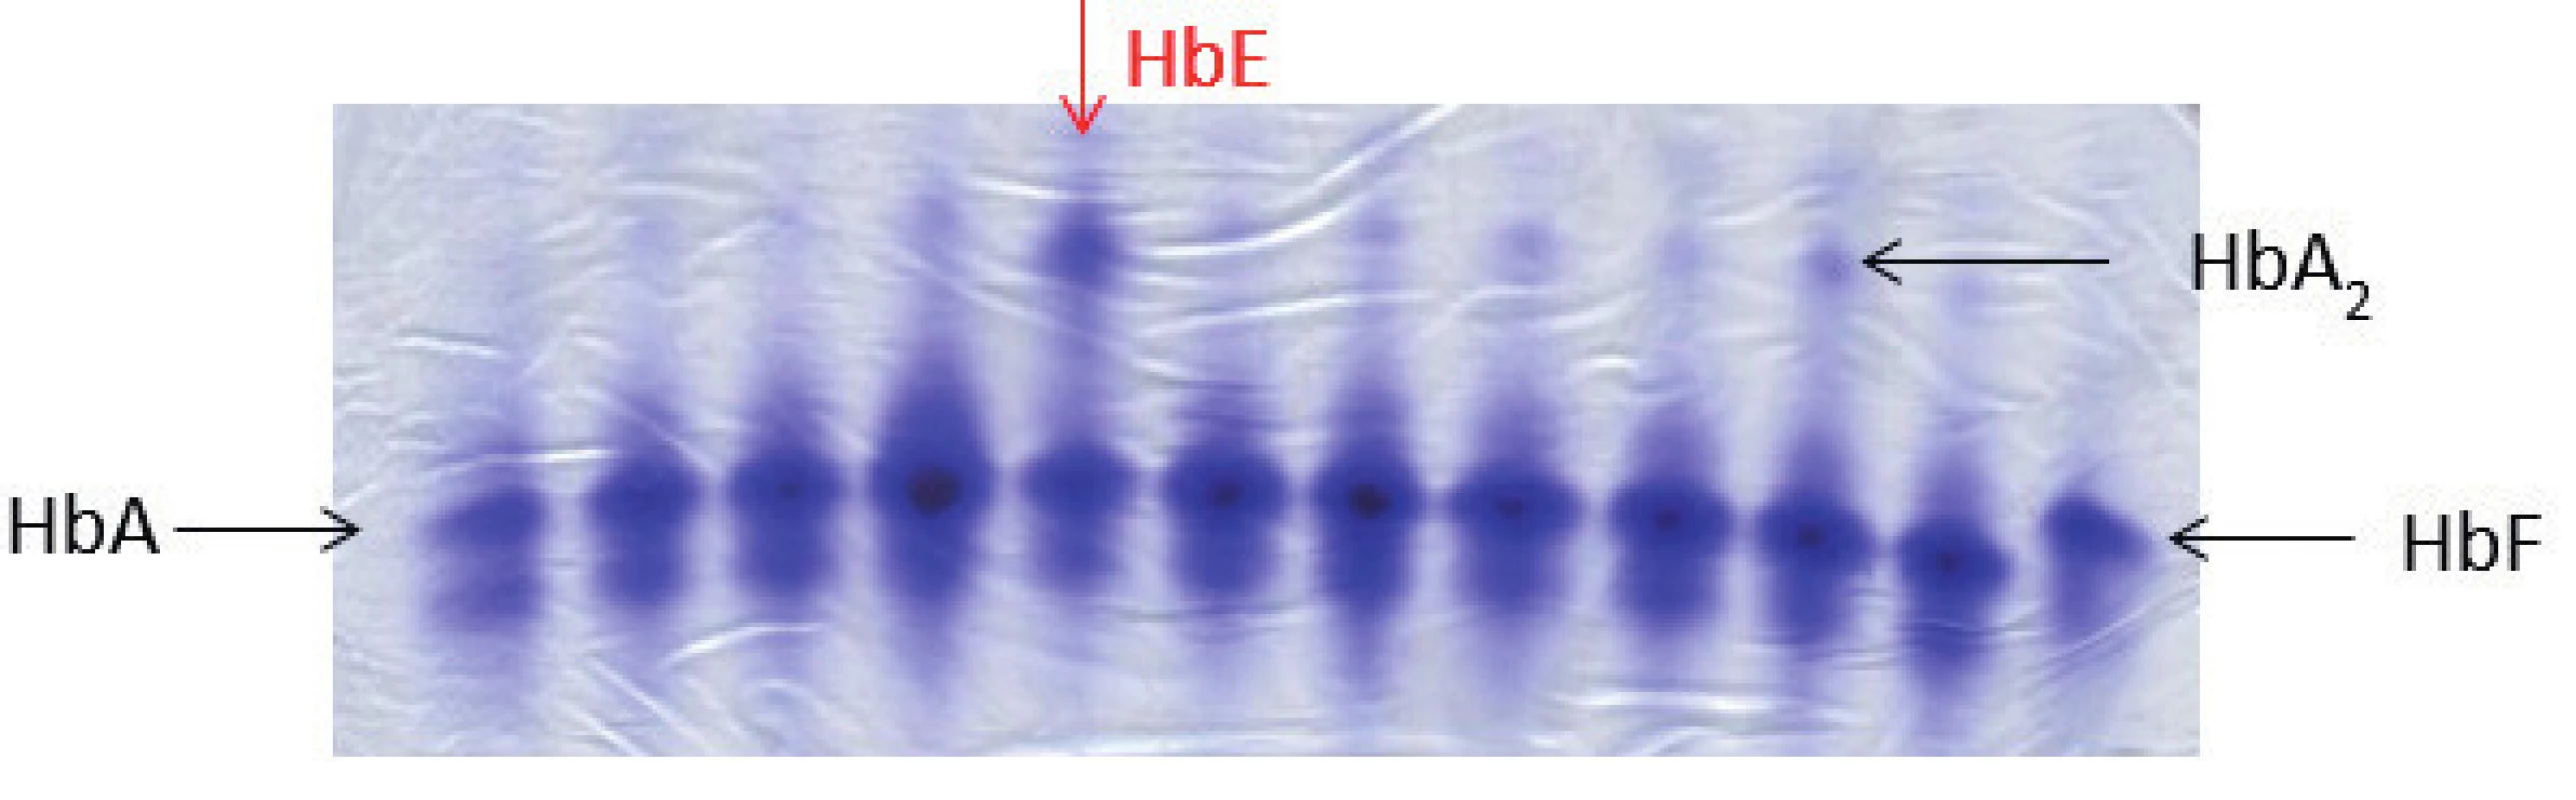 Elektroforéza Hb, polyakrylamidový gel barvený Coomasie blue. Na obrázku zobrazené jednotlivé frakce hemoglobinového spektra: HbA, HbF, u některých vzorků je patrná výrazněji frakce HbA₂, jedná se o nosiče β-talasemické alely. Červená šipka ukazuje pacienta s abnormálním hemoglobinovým spektrem, jedná se o nosiče alely pro HbE (hemoglobinová varianta s talasemickým fenotypem). HbE putuje stejnějako frakce HbA₂, k jeho potvrzení je nutná sekvenační analýza HBB genu. (M. Divoká, Hemato-onkologická klinika, FN a LF Univerzity Palackého v Olomouci)
Fig. 4. Hemoglobin electrophoresis in polyacrylamide gel stained with Coomasie blue. Hemoglobin electrophoresis showing the fractions of hemoglobin: HbA, HbF. More significant HbA₂ fraction in some samples demonstrates β-talasemia minor. The red arrow showing abnormal hemoglobin spectrum in a patient with hemoglobin E trait (hemoglobin variant with thalassemic phenotype). HbE fraction co-migrates with HbA₂. To confirm the Hb variant, HBB gene sequencing analysis is required.